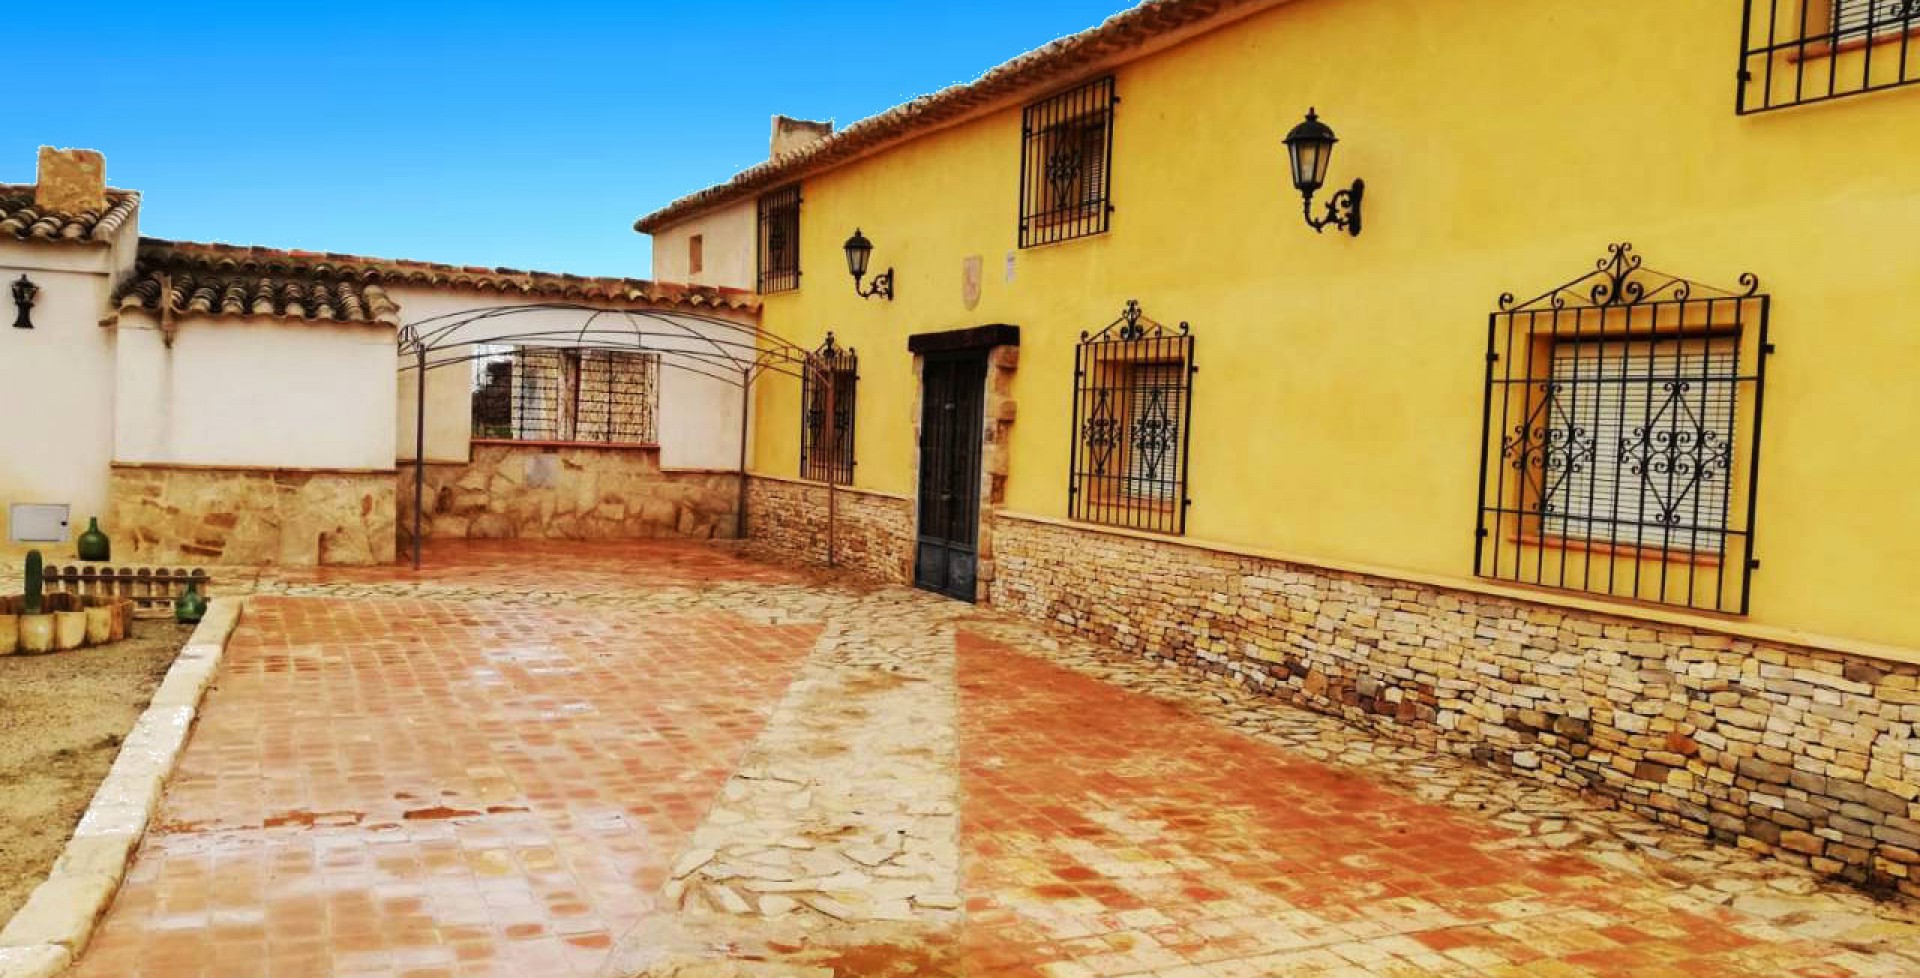 Espectacular Casa de campo de estilo señorial, Ricote, Murcia, España